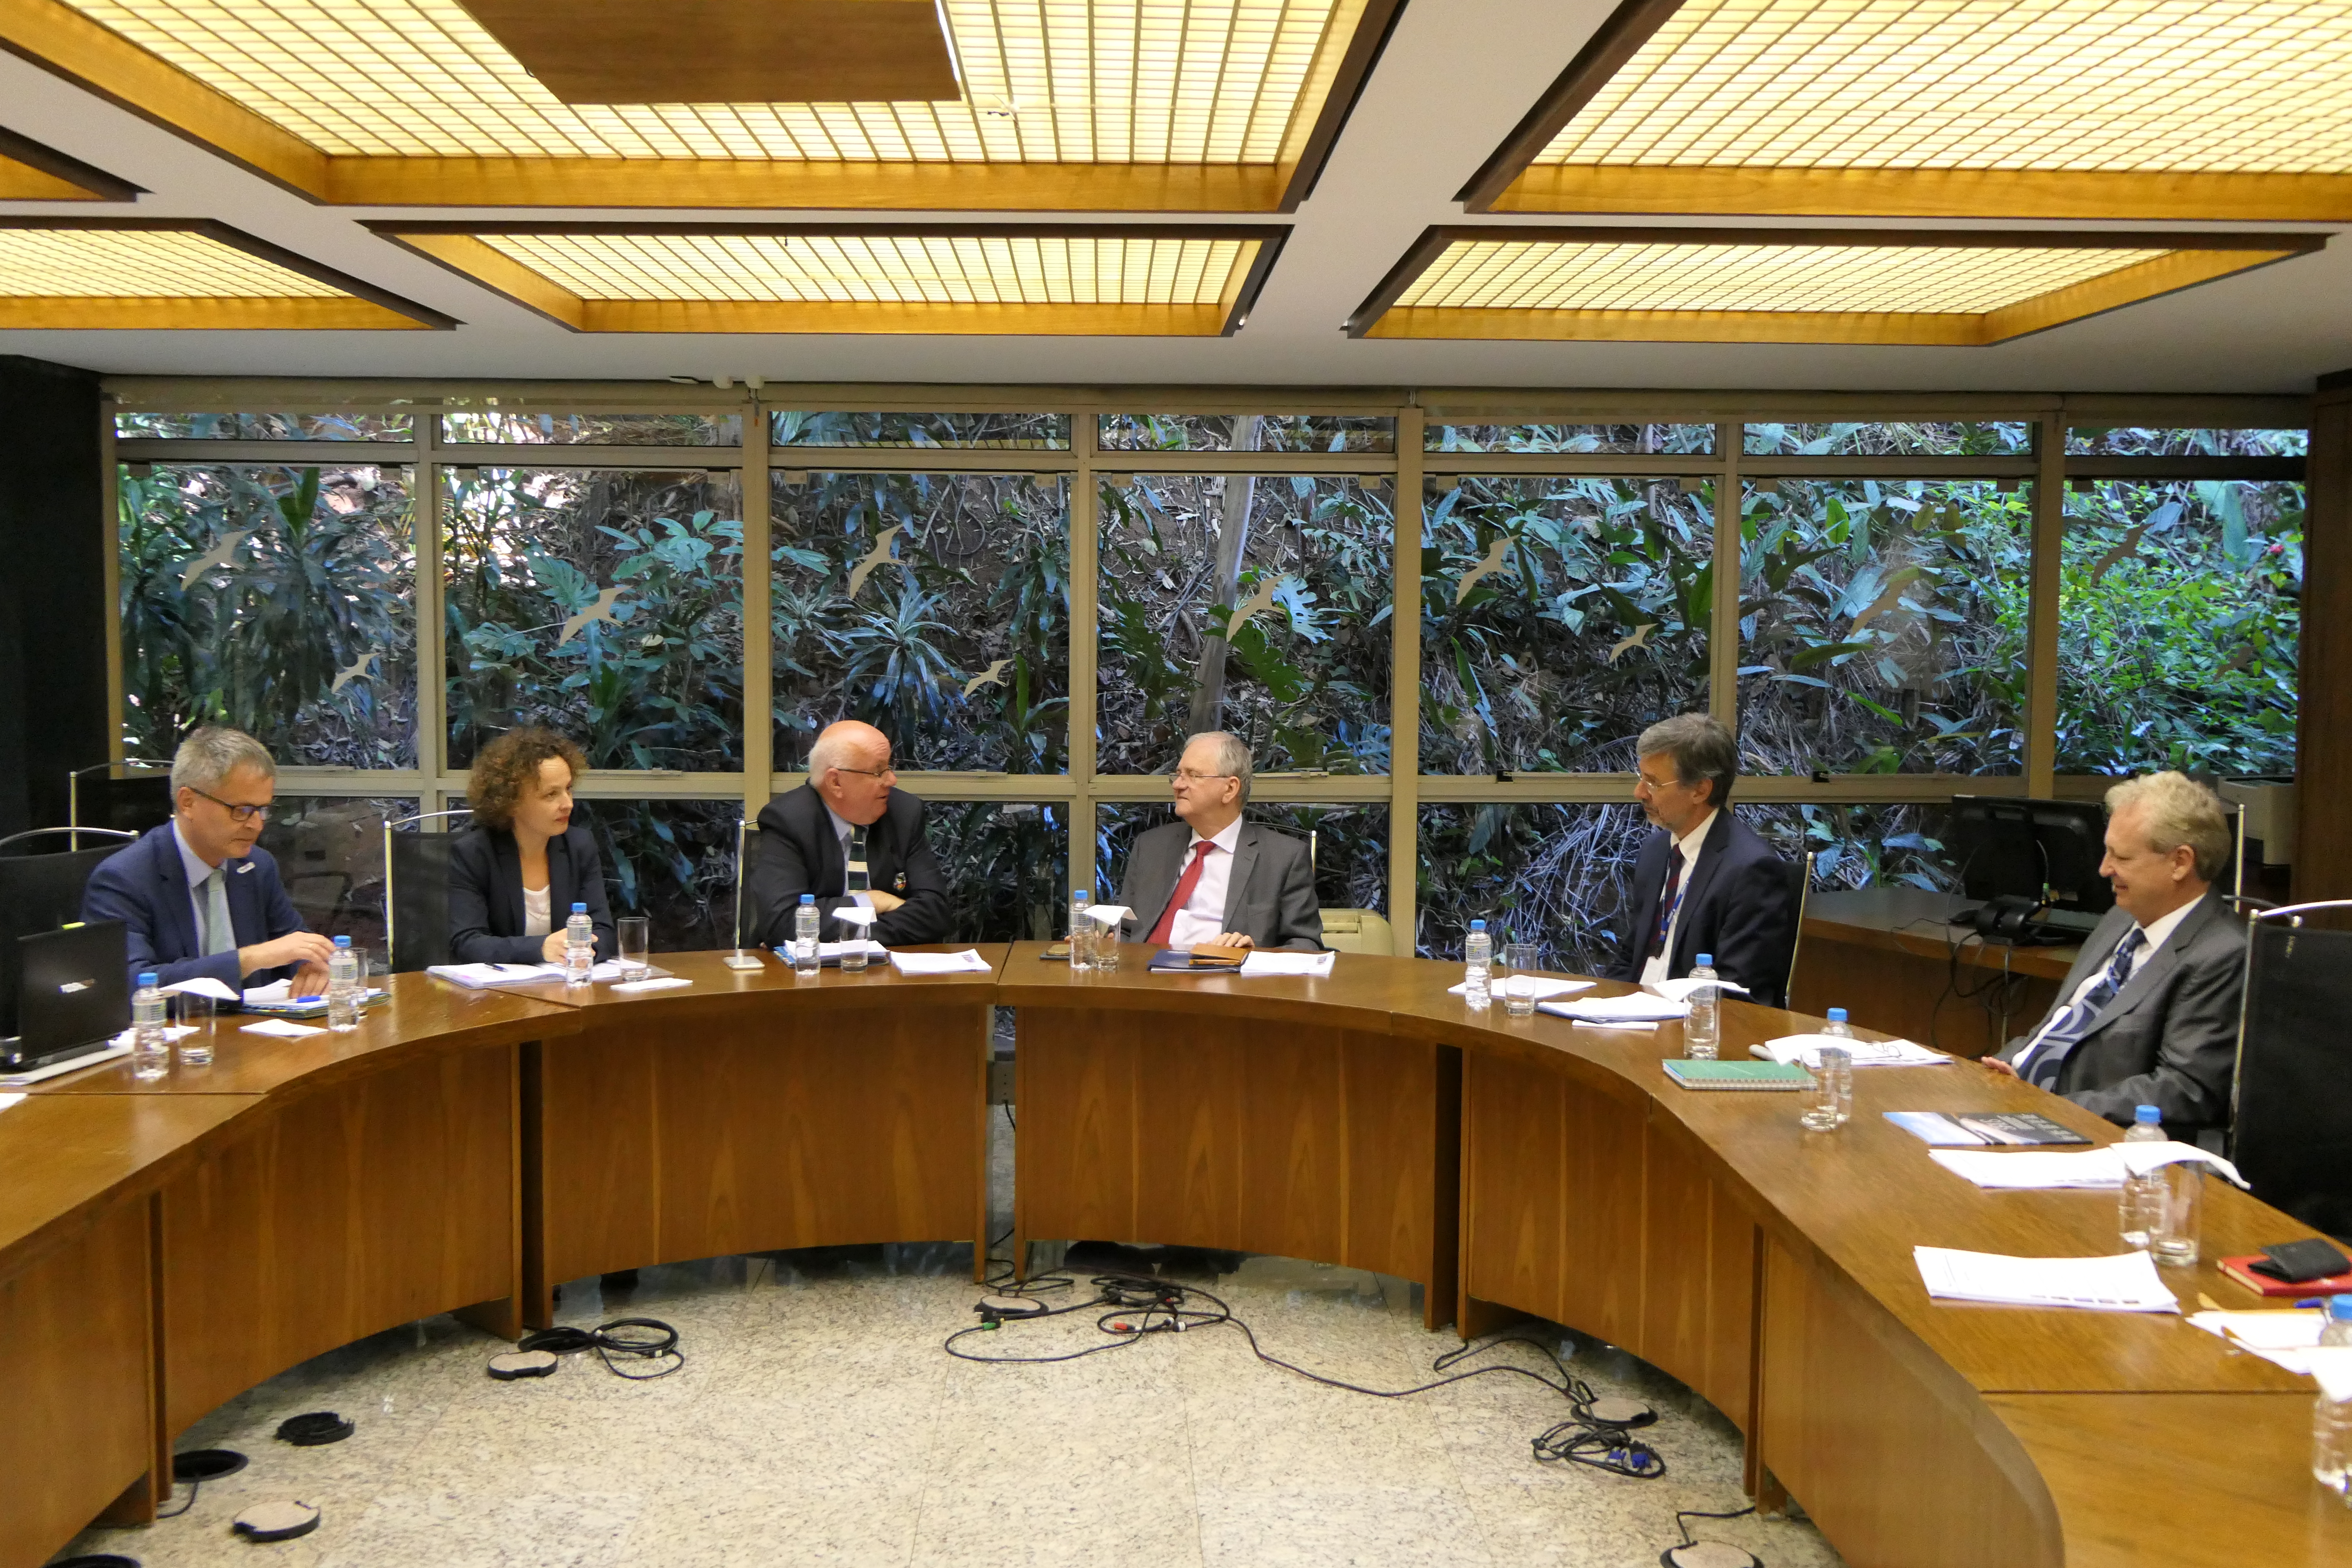 DFG e FAPESP reúnem-se em São Paulo. Ao centro, os presidentes Peter Strohscneider (DFG) e Marco Antônio Zago (FAPESP). À esquerda, Dietrich Halm e Kathrin Winkler (DFG). À direita, Carlos Henrique Brito e Euclides de Mesquita Neto (FAPESP).